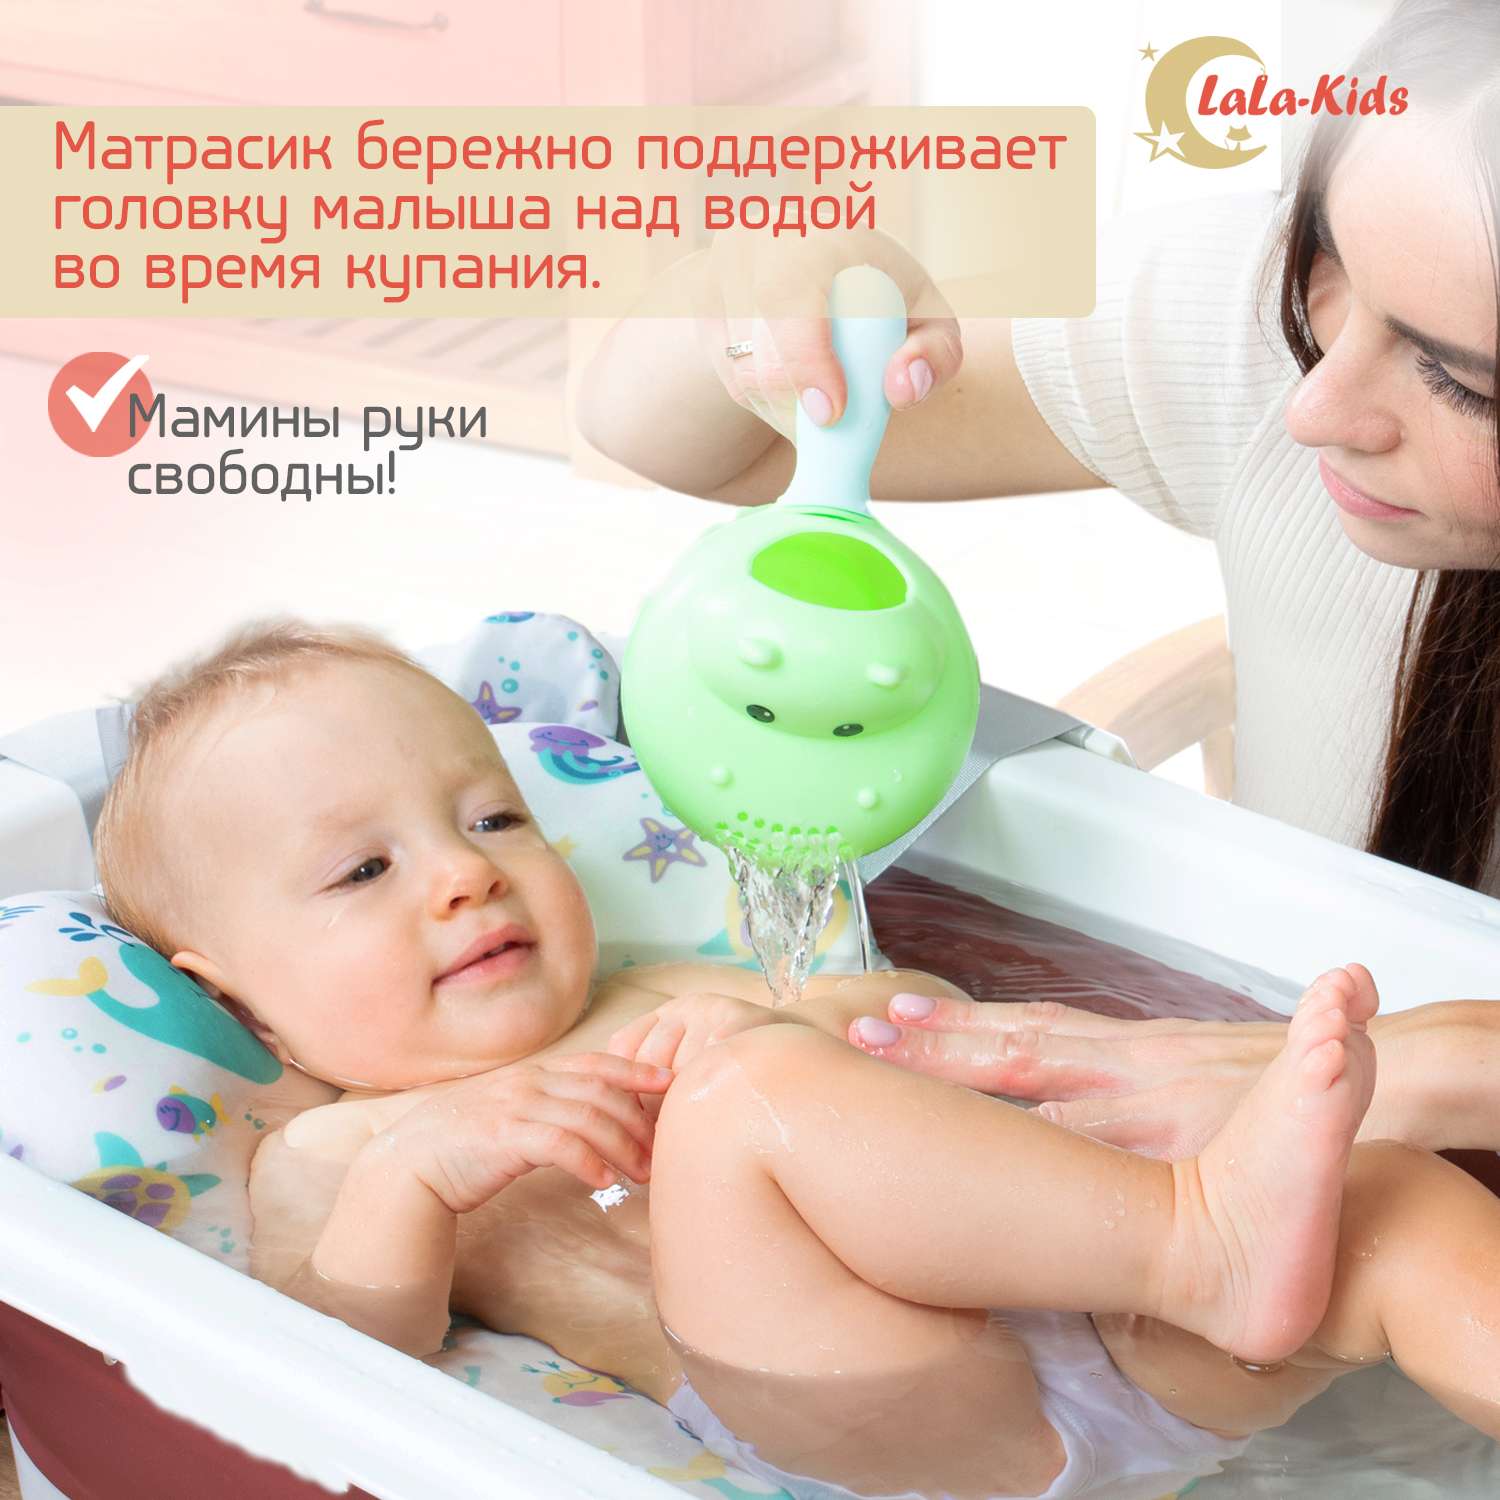 Детская ванночка LaLa-Kids складная с матрасиком для купания новорожденных - фото 9